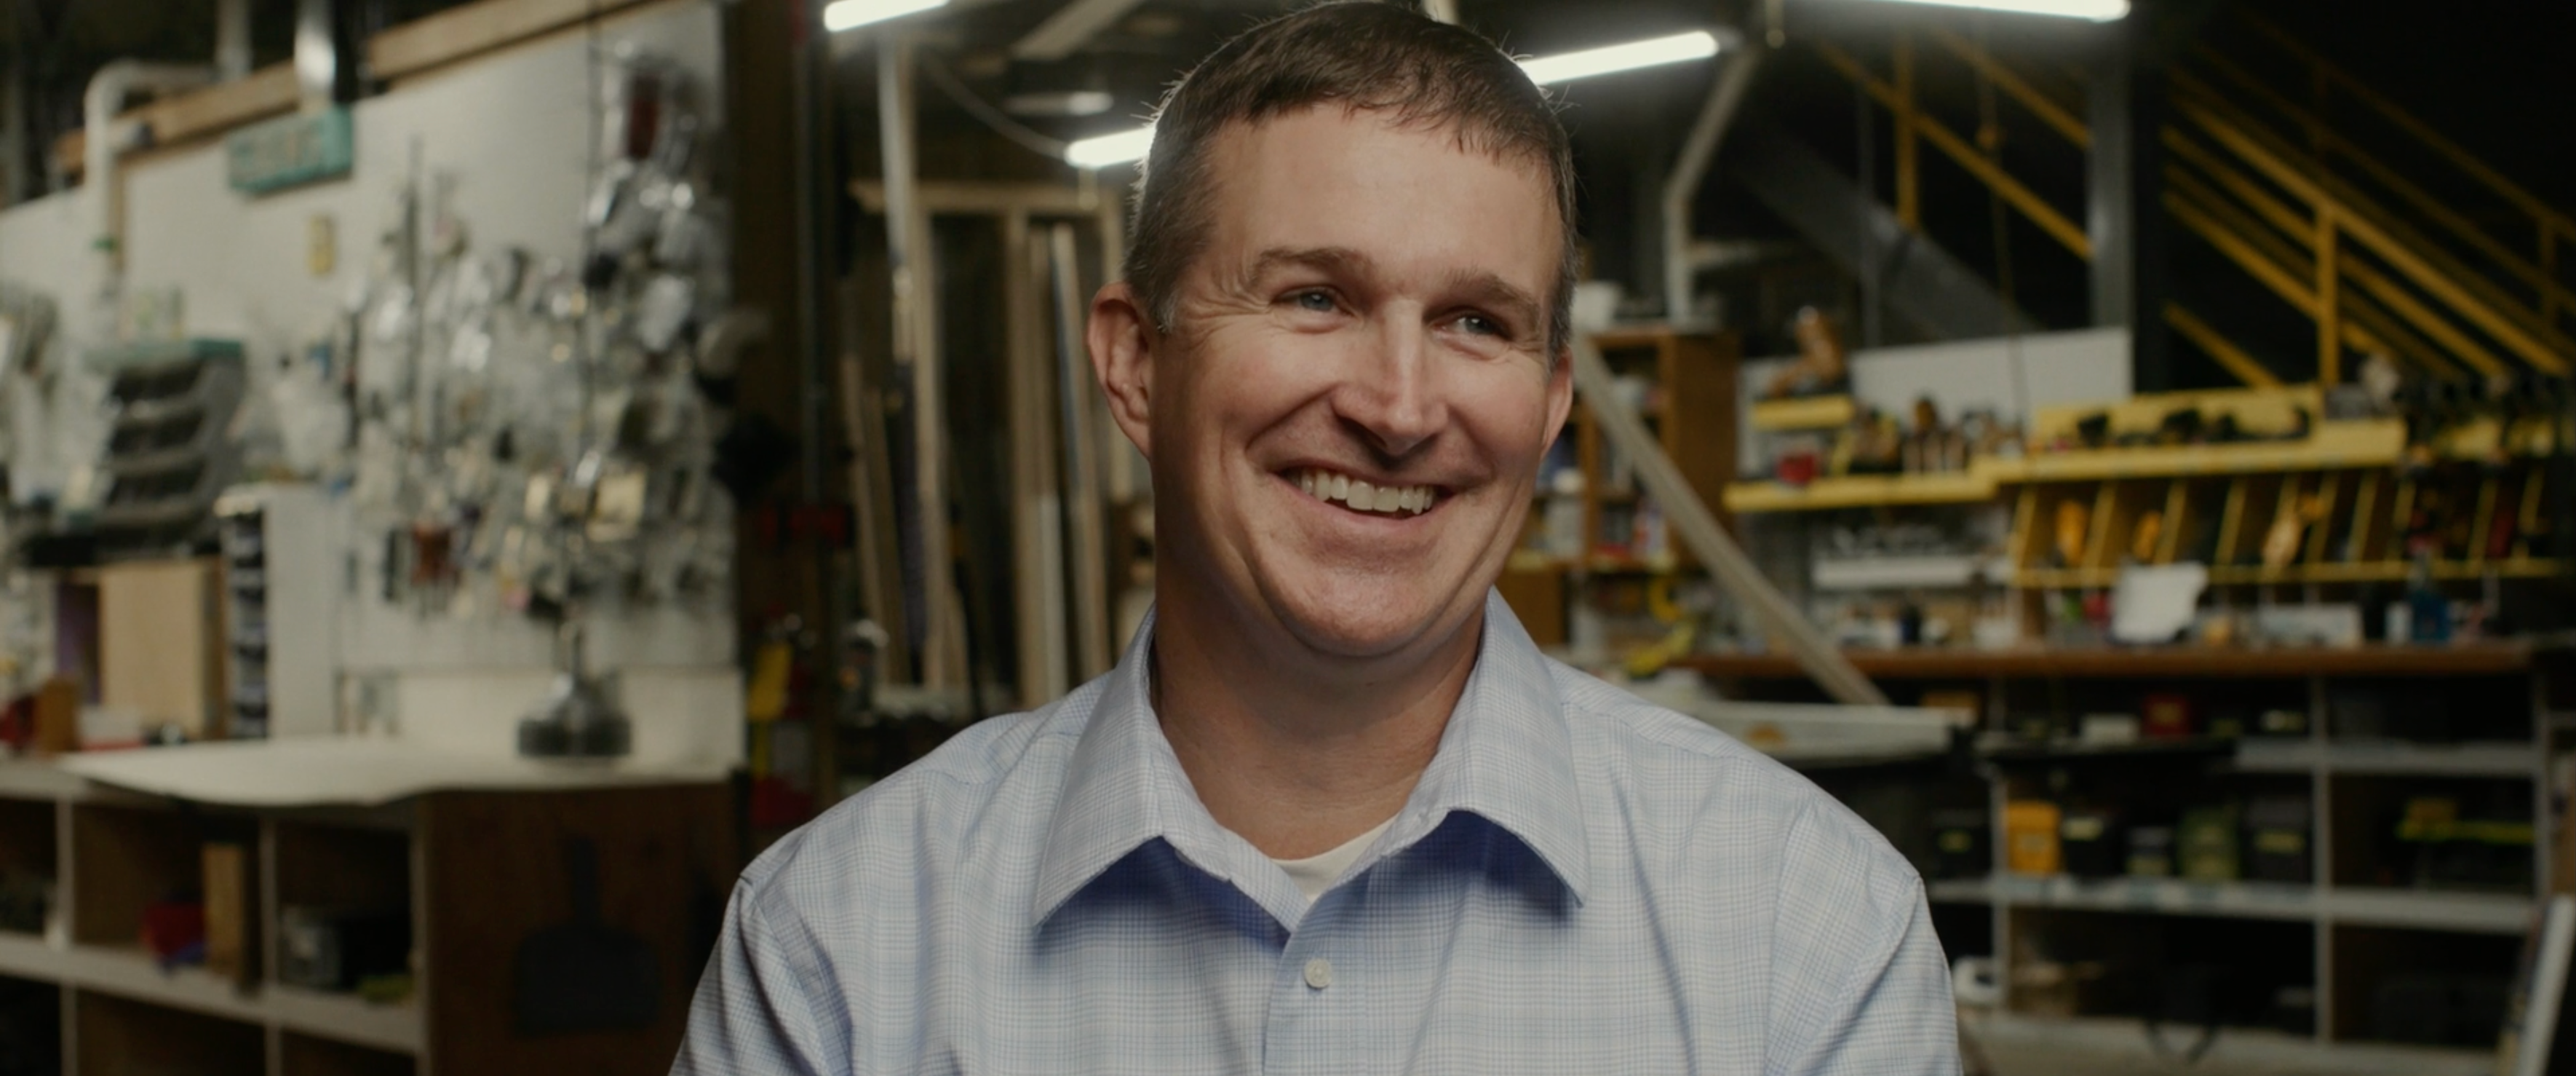 smiling man in workshop